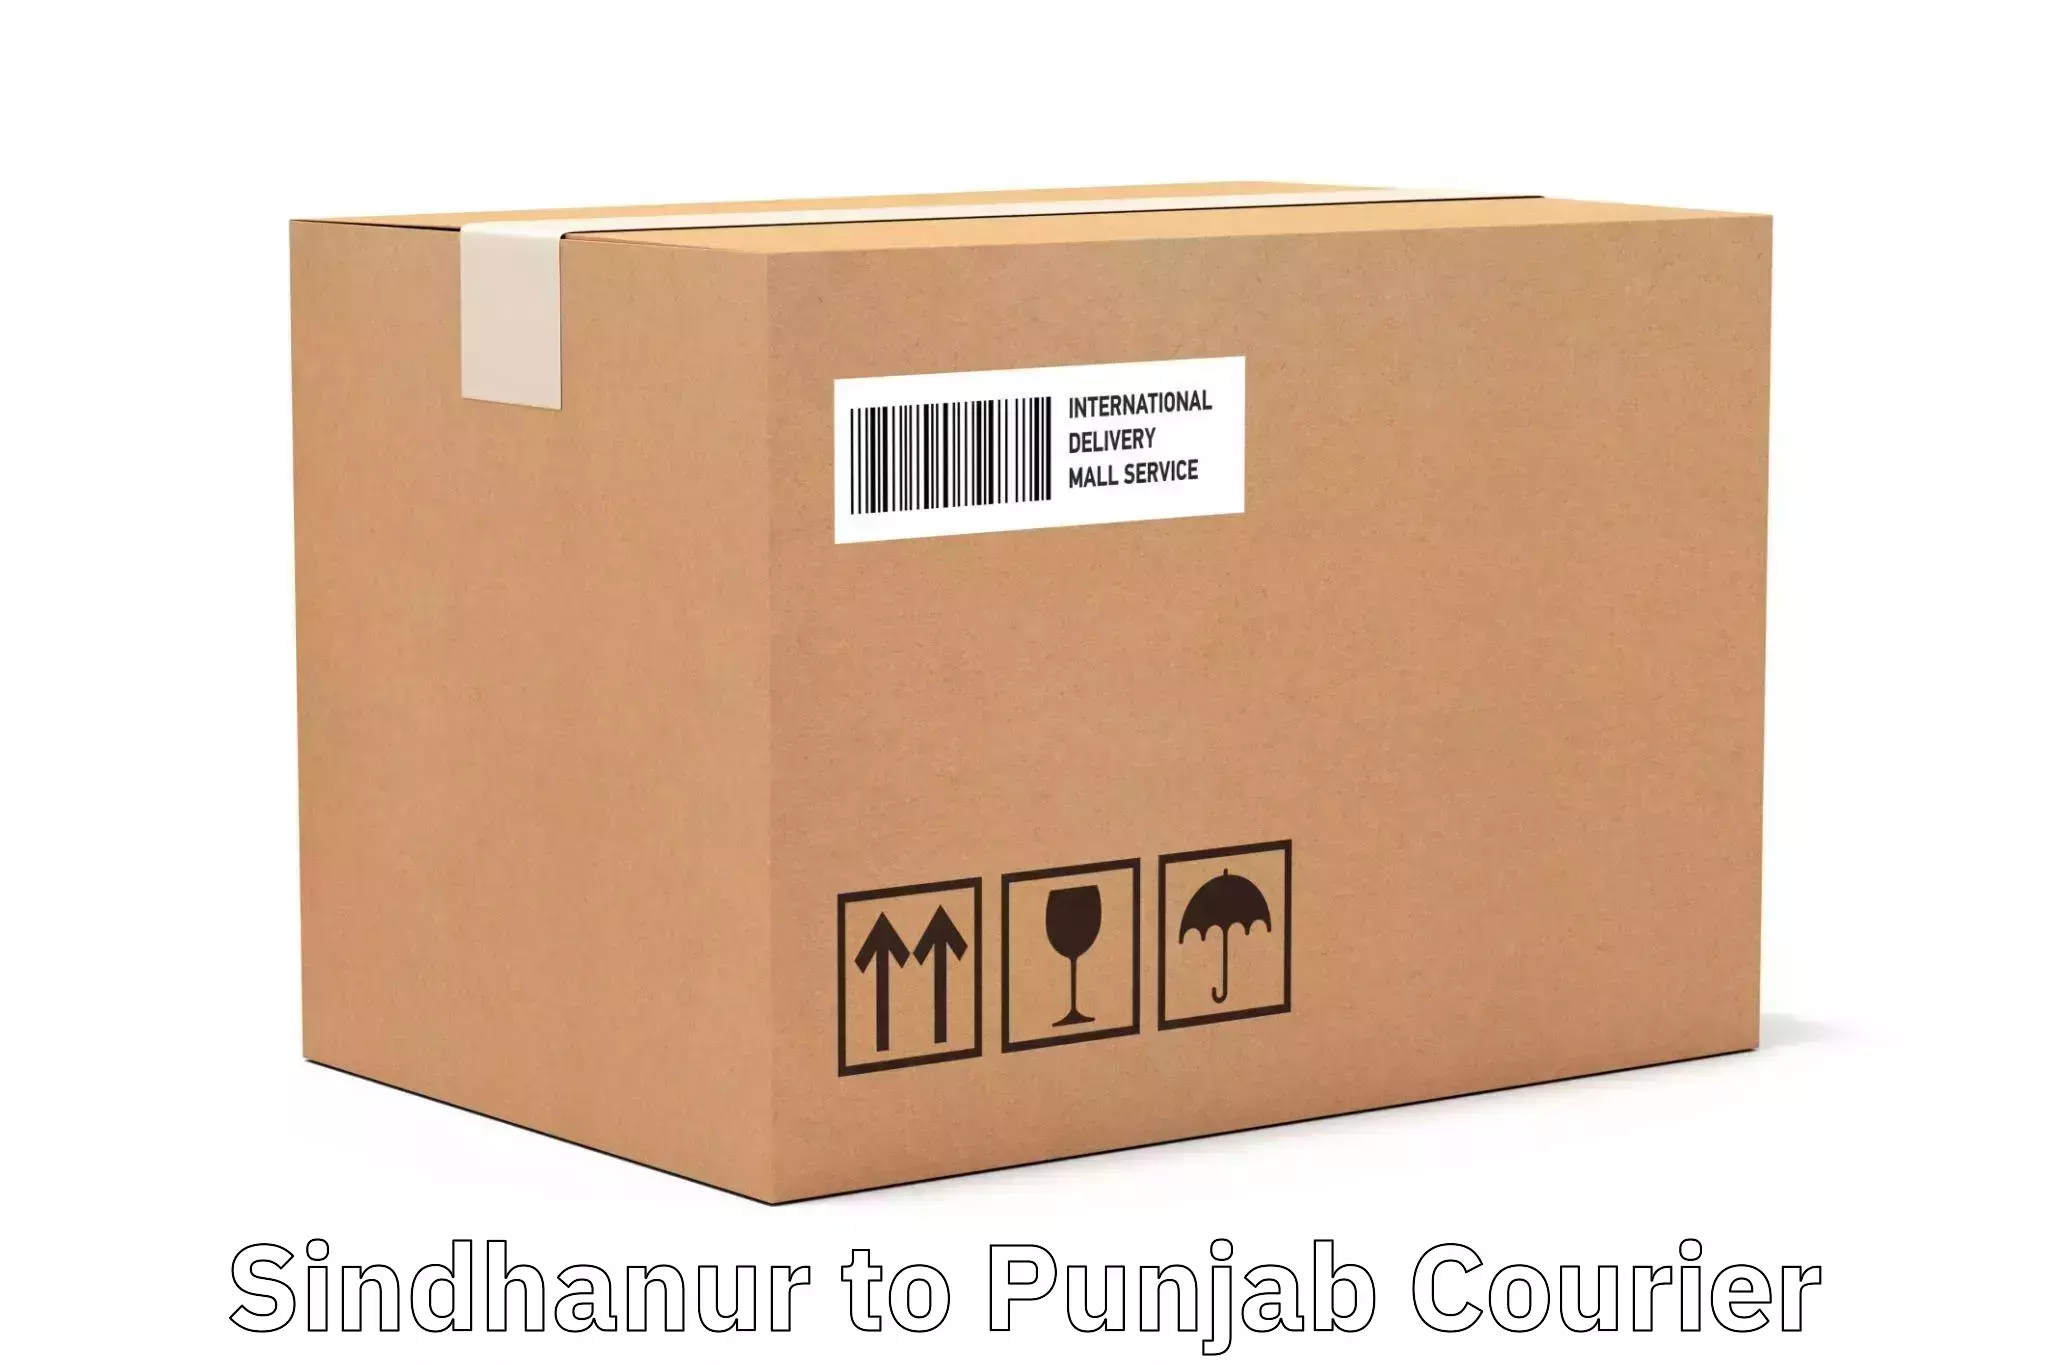 Professional courier handling Sindhanur to Rampura Phul